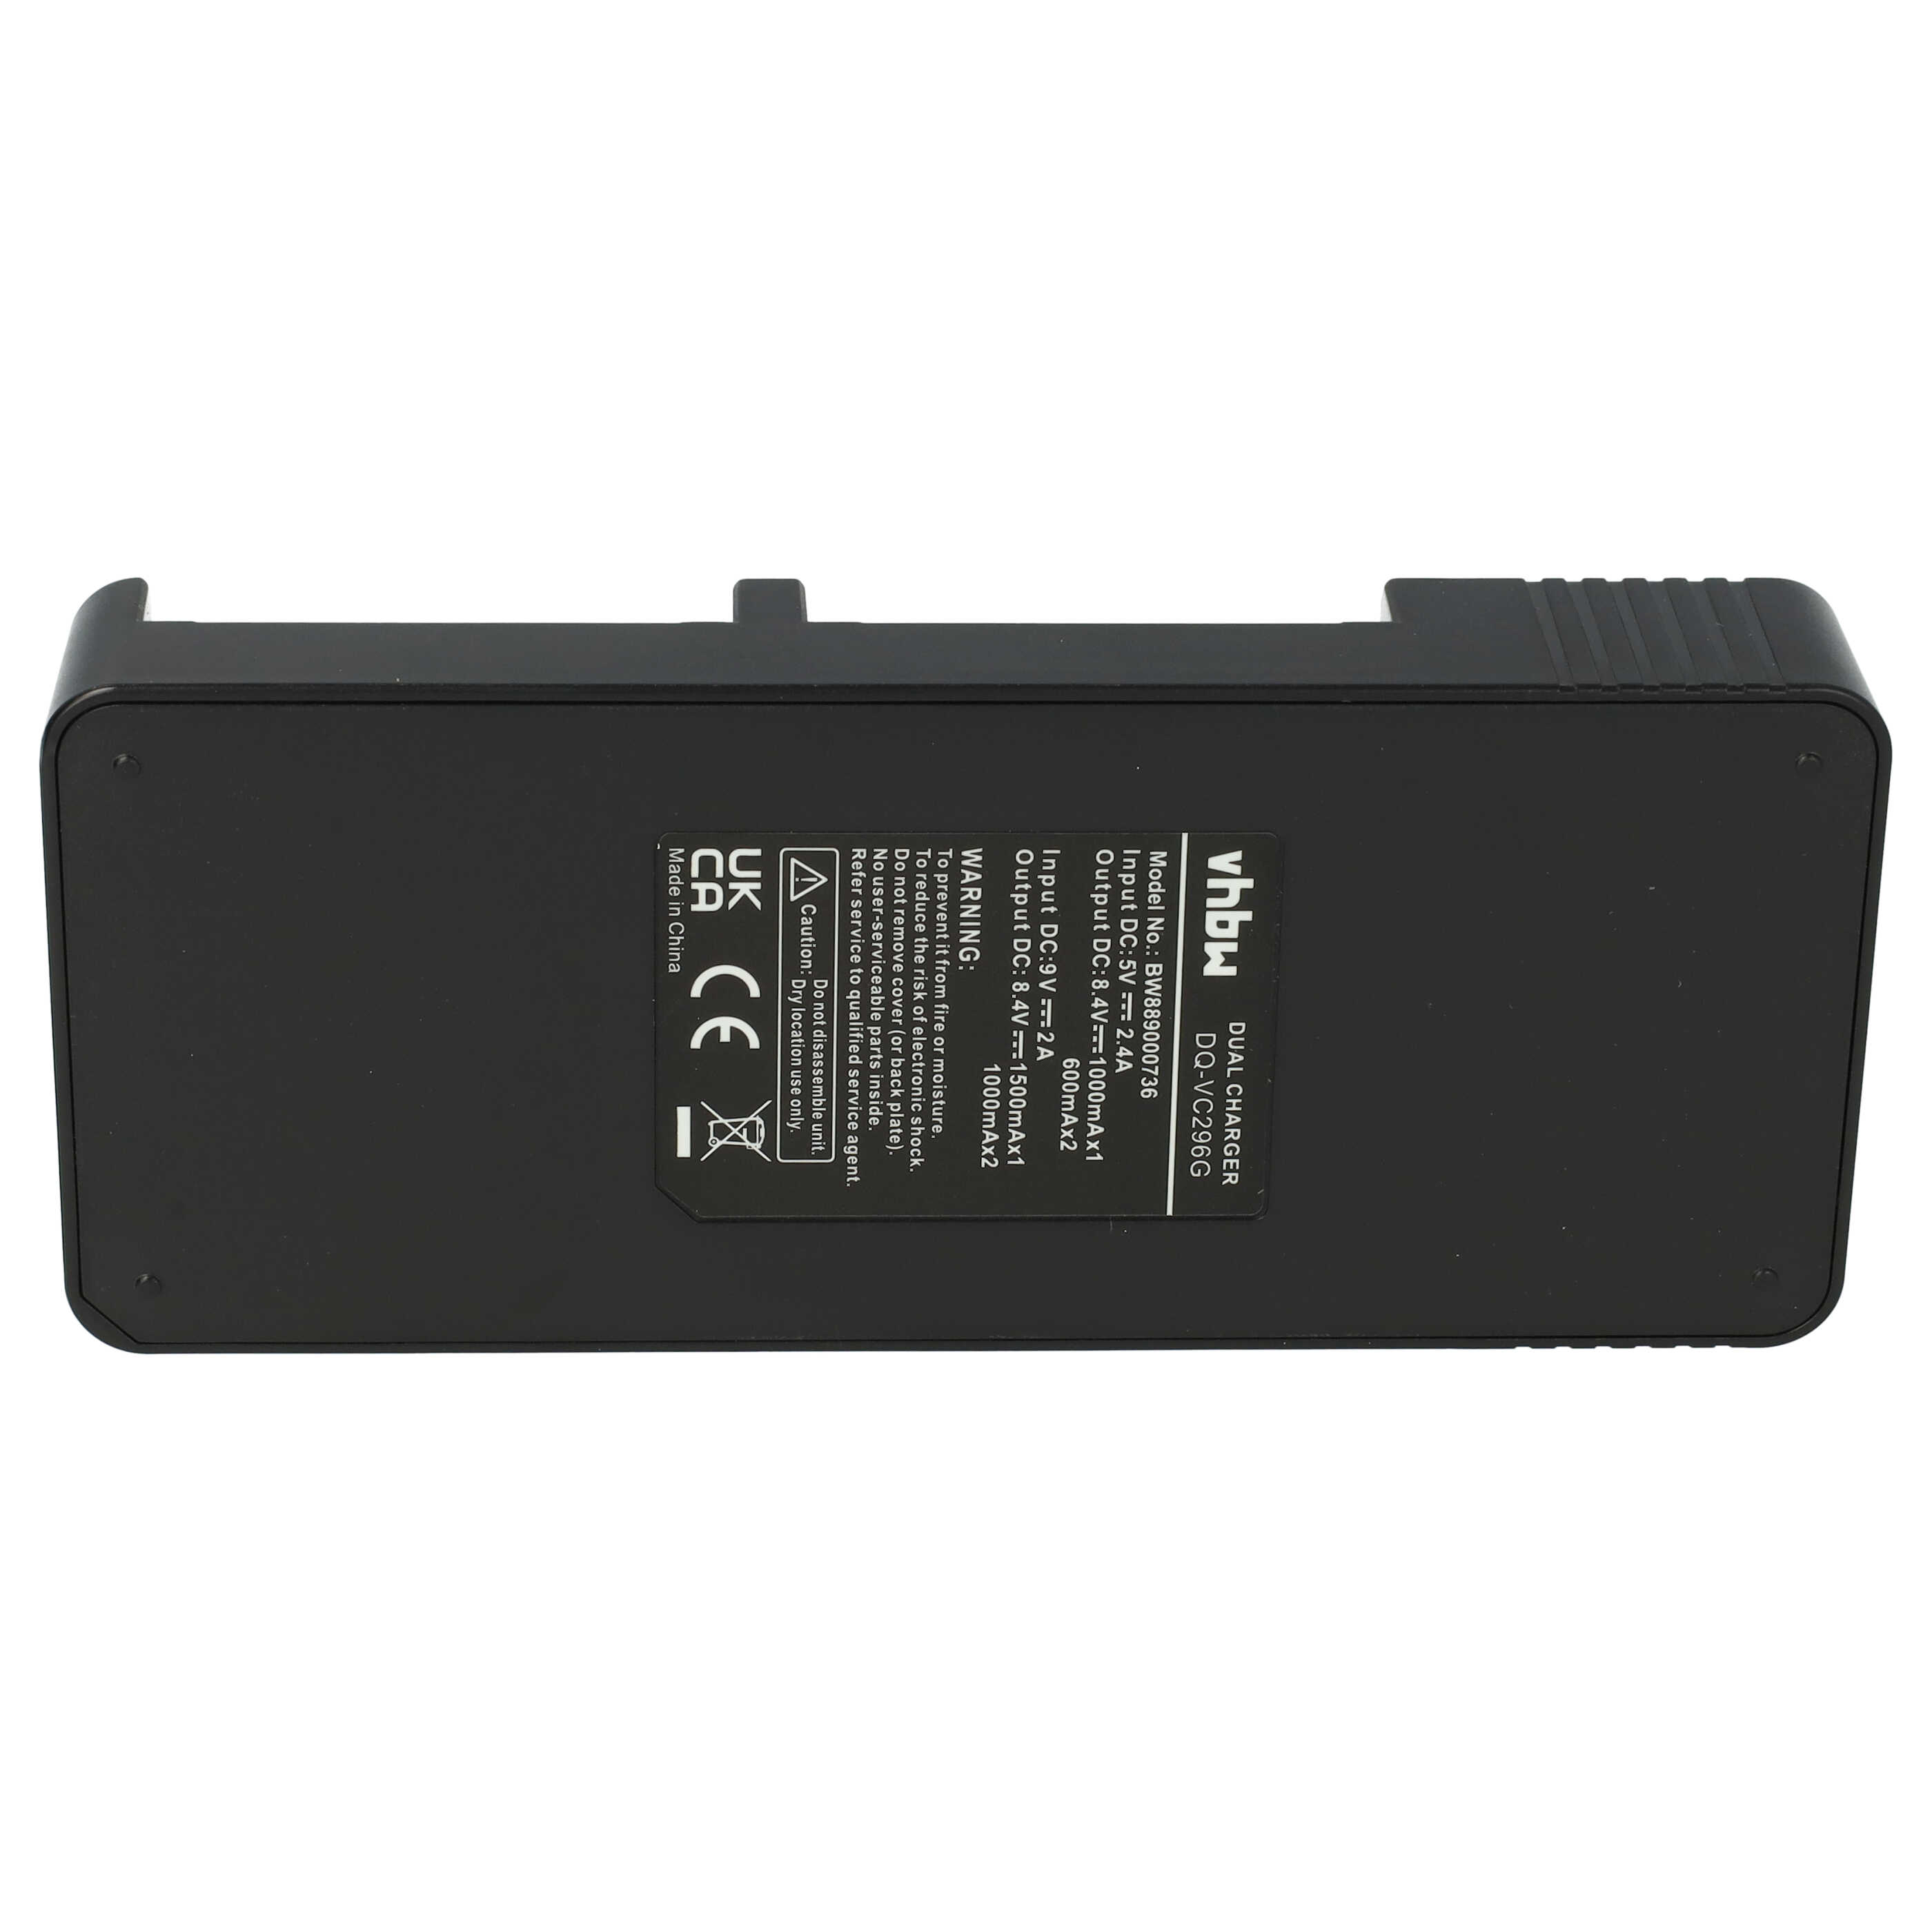 Caricabatterie per fotocamera JVC BN-VC264G